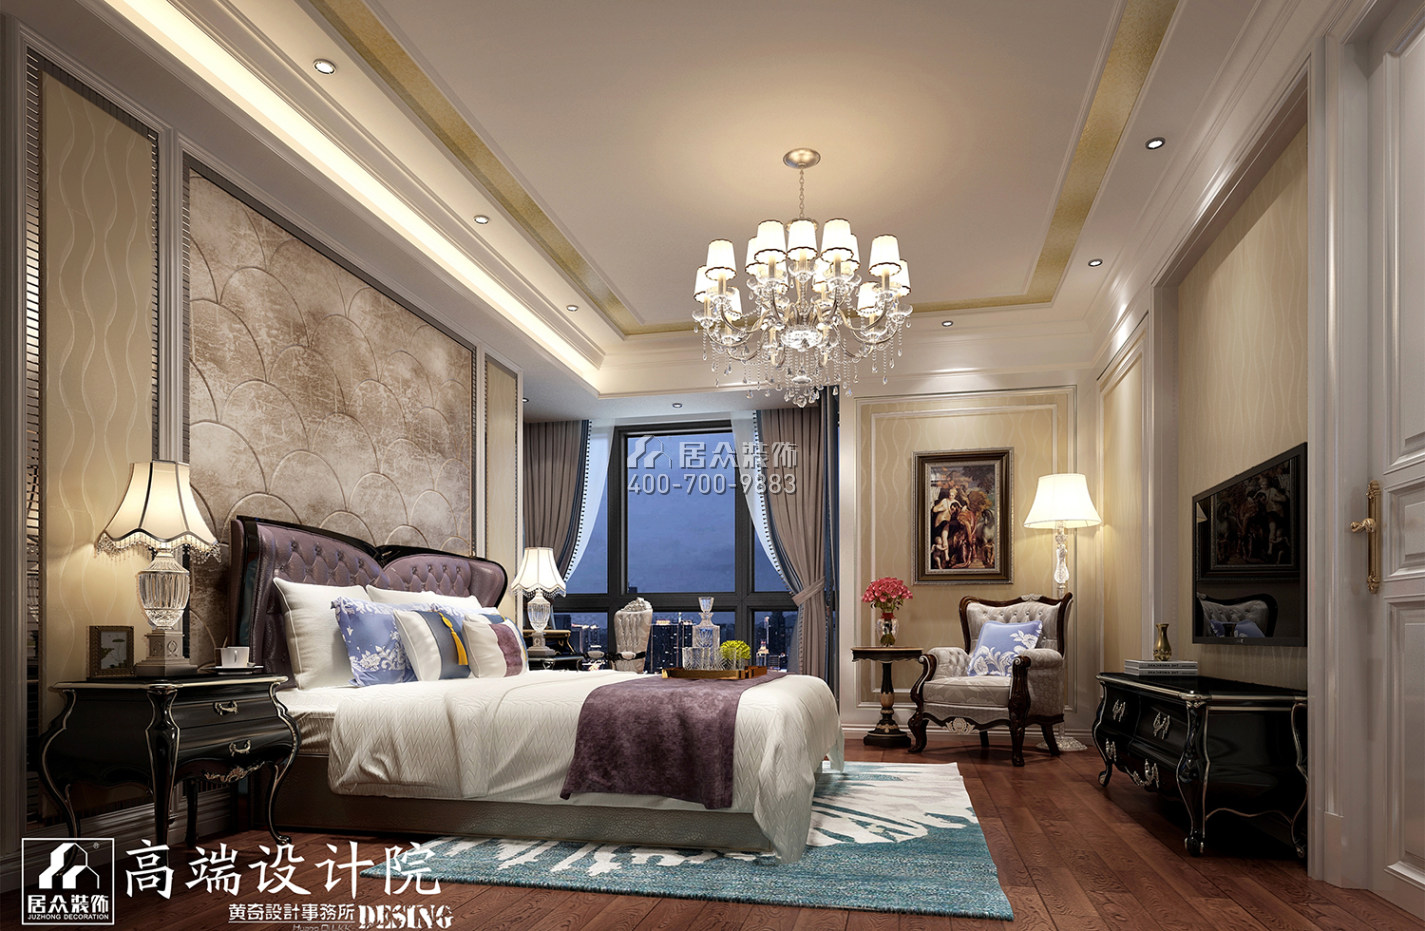 复地180平方米新古典风格平层户型卧室装修效果图